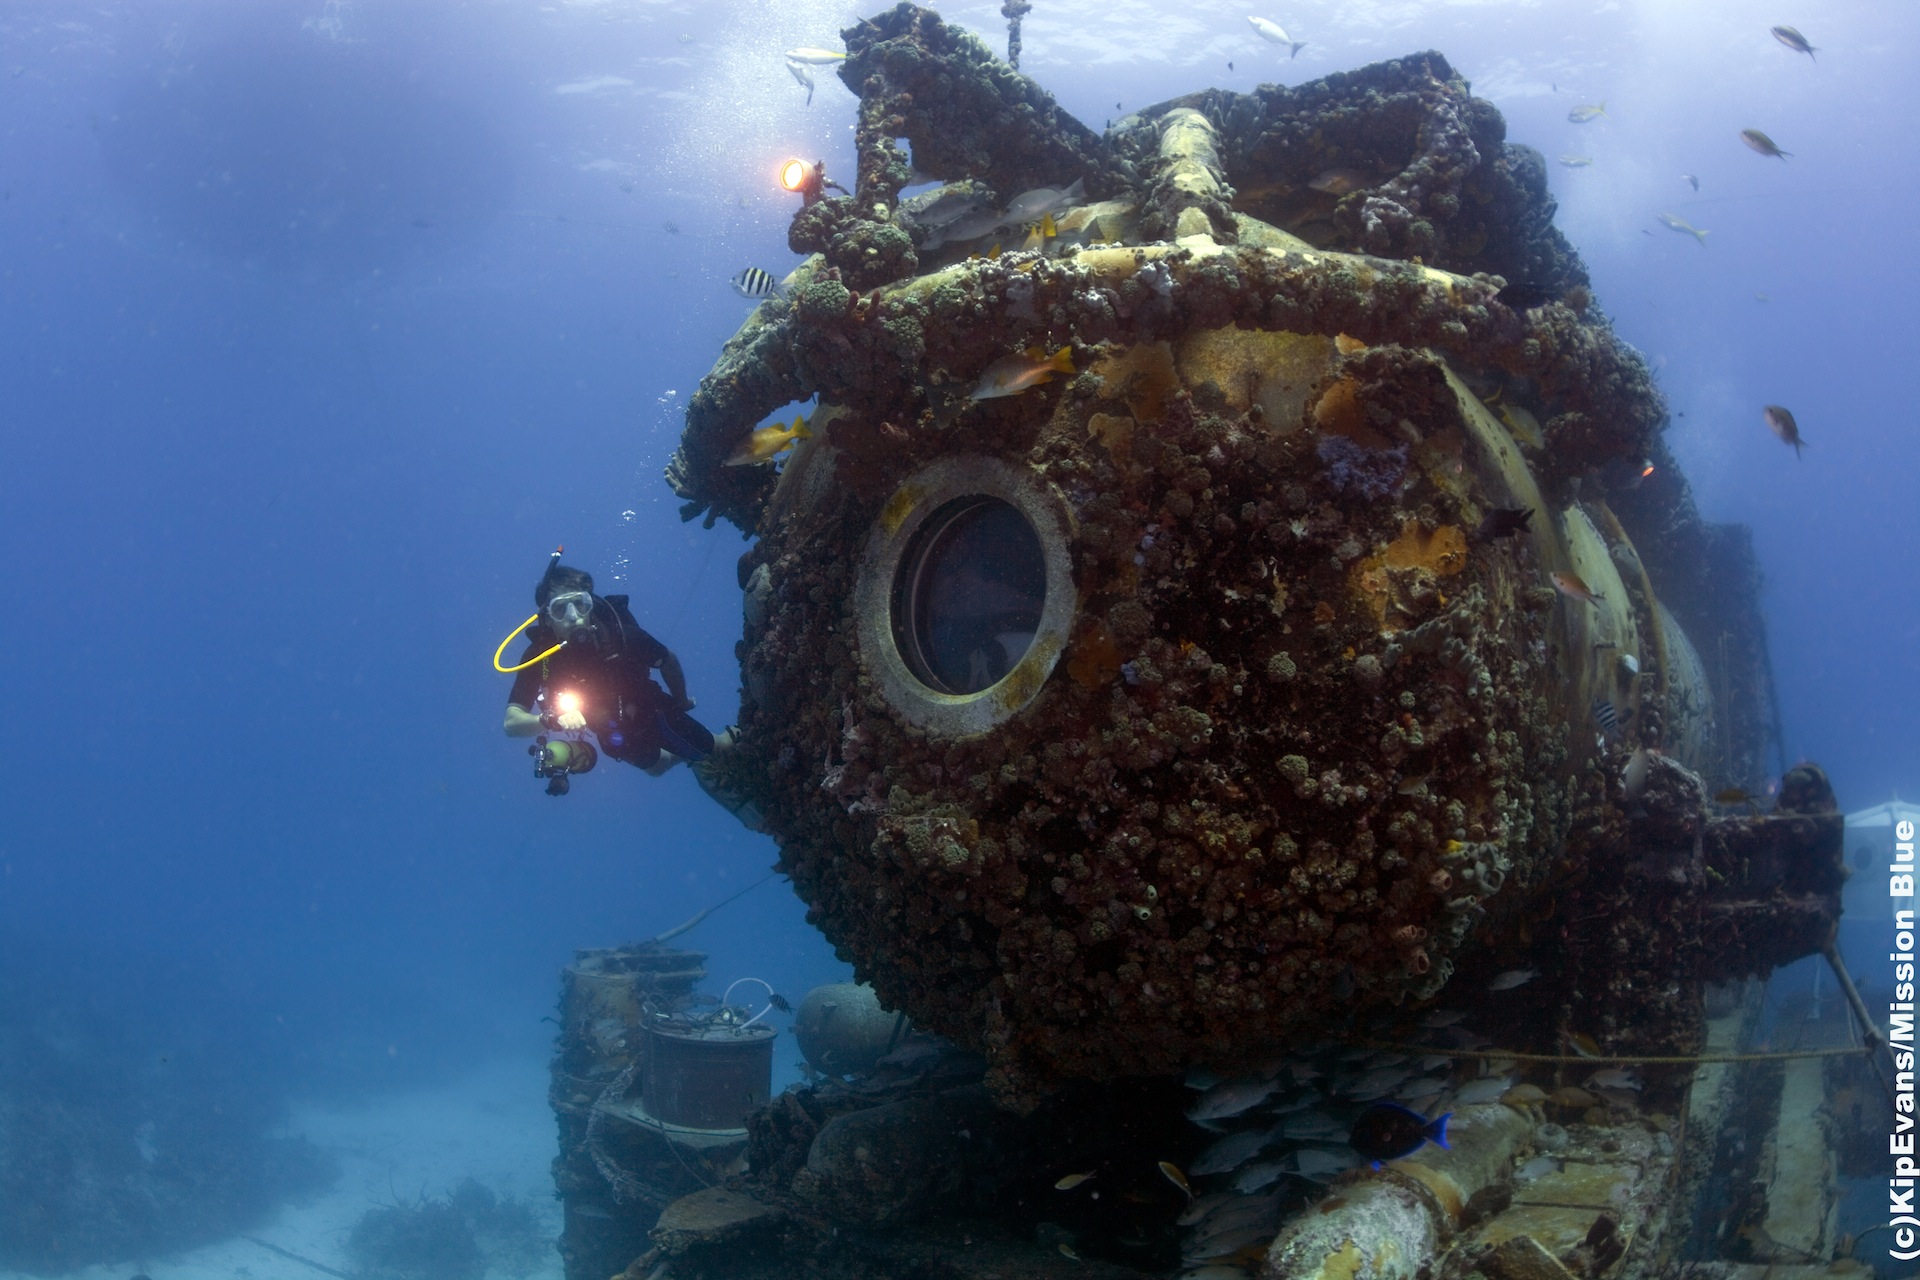 PHOTO: Fabien Cousteau is an oceanographic explorer. 